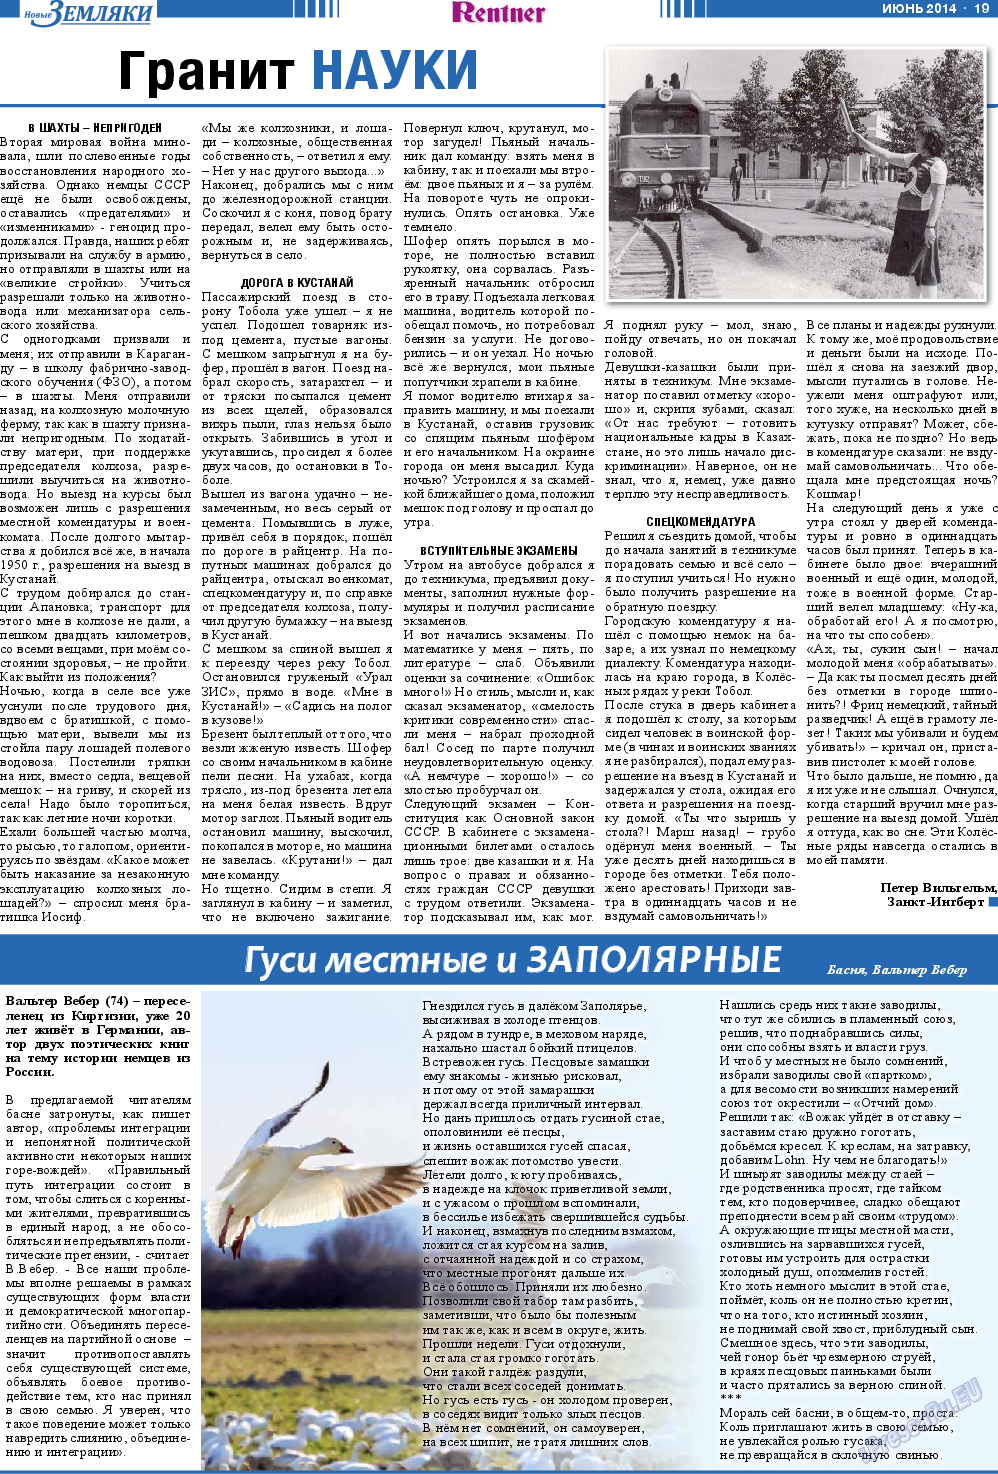 Новые Земляки, газета. 2014 №6 стр.19